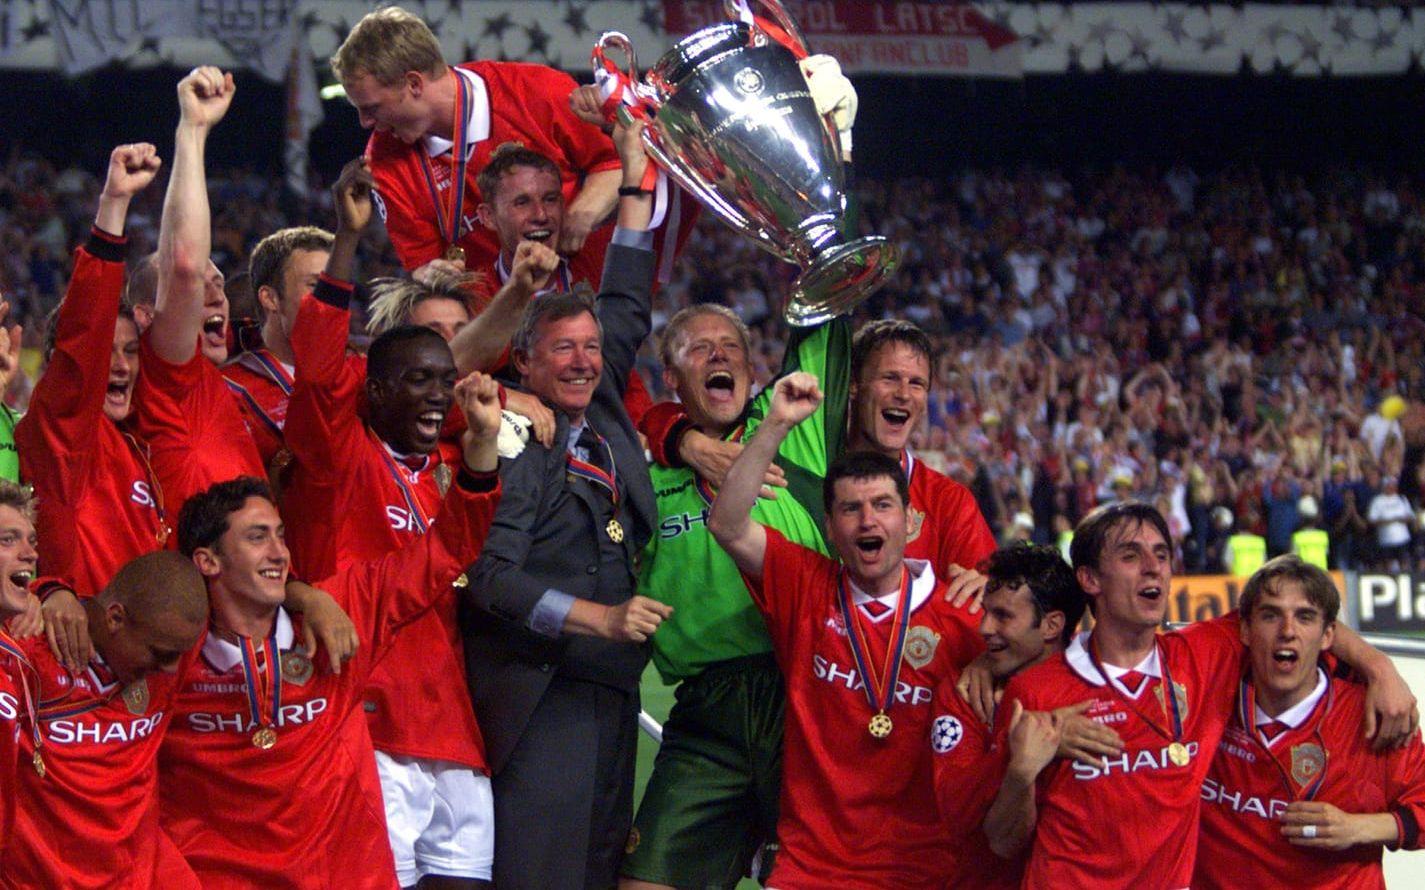 Sir Alex Ferguson och spelarna i Manchester United jublar efter den spektakulära vändningen, från underläge till seger på två minuter i slutskedet av CL-finalen 1999. Foto: TT